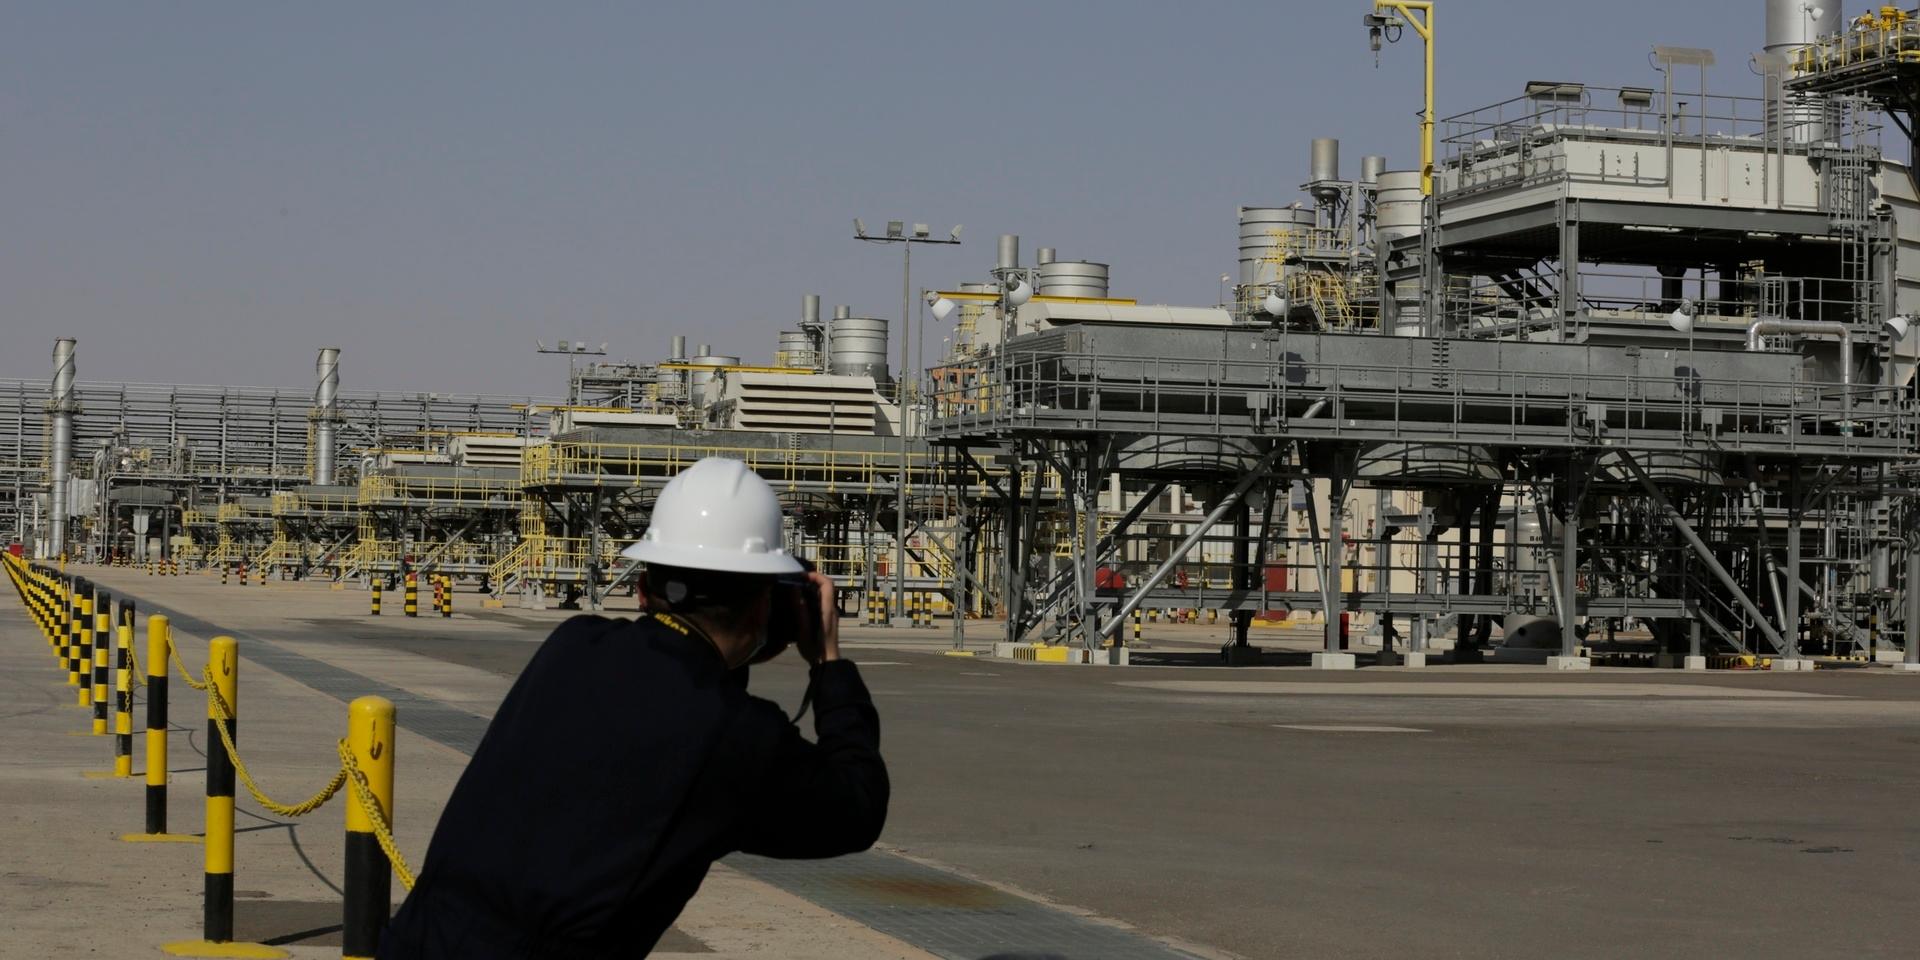 ”I mitten av juni hade fonden till exempel investerat 328 miljoner i den saudiska diktaturens eget oljebolag, Saudi Aramco.”